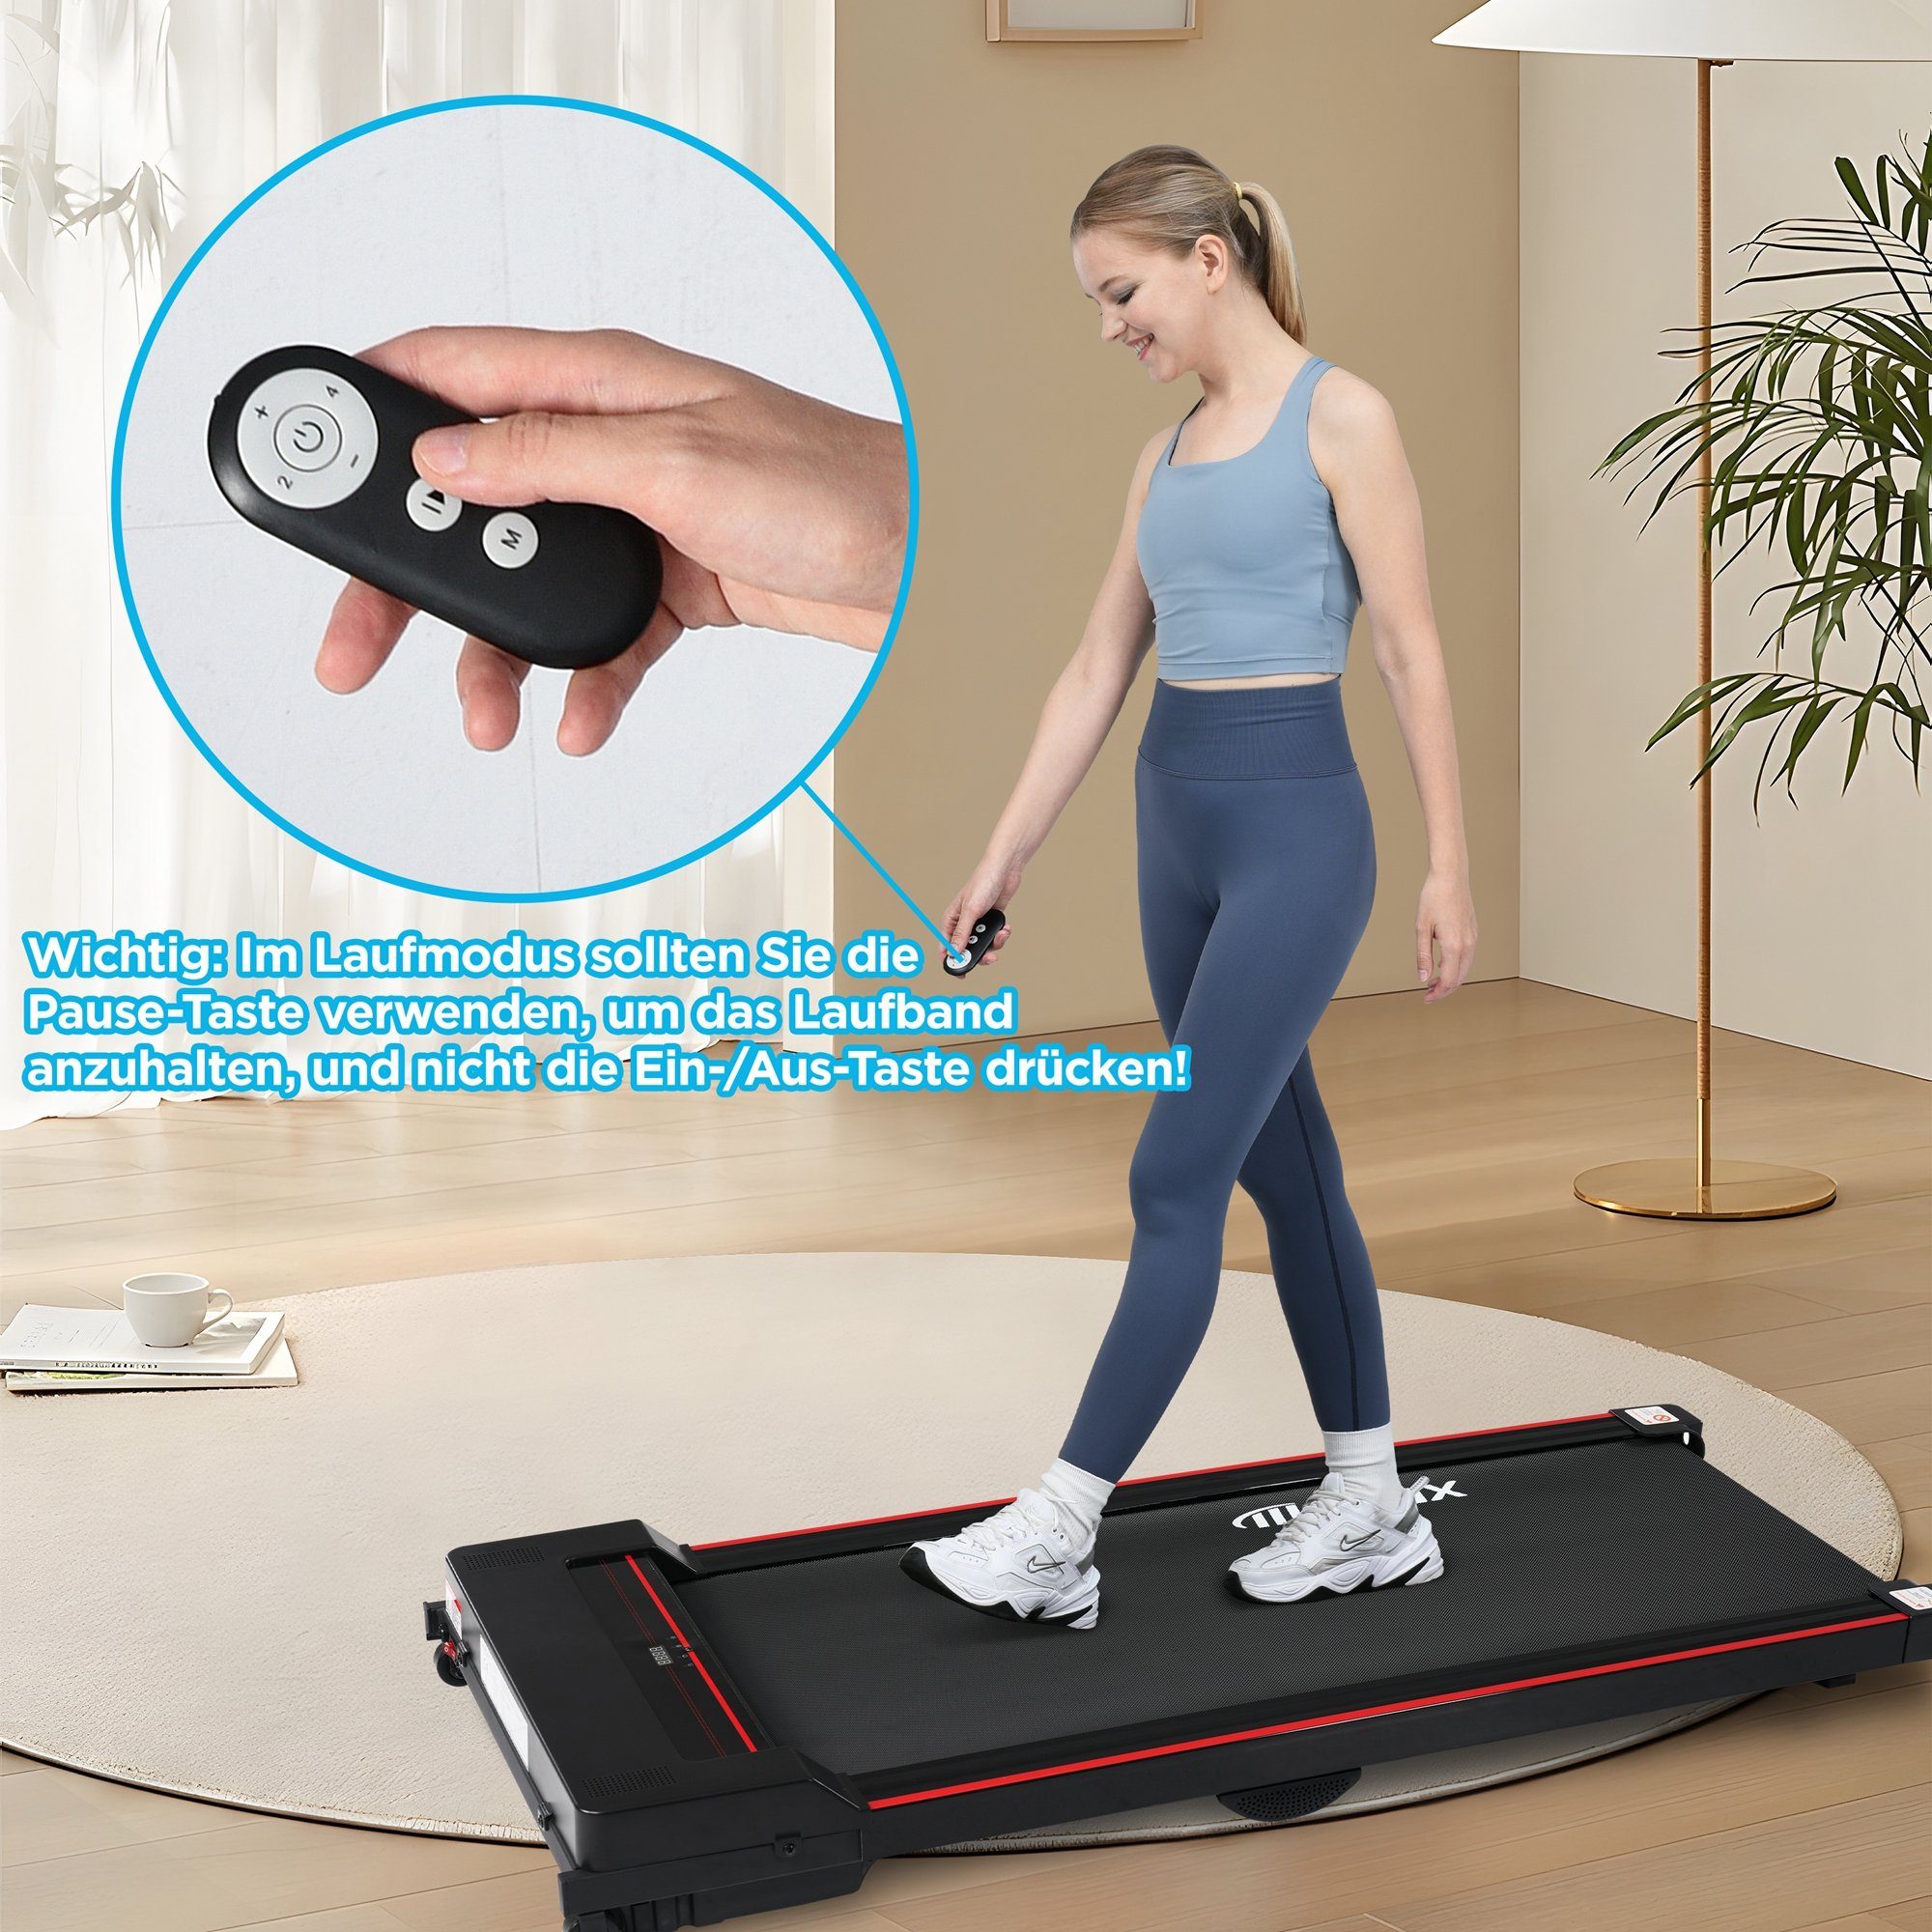 Jogging Treadmill, KM/H, Merax Laufband, Pad 1-8 Walking Underdesk